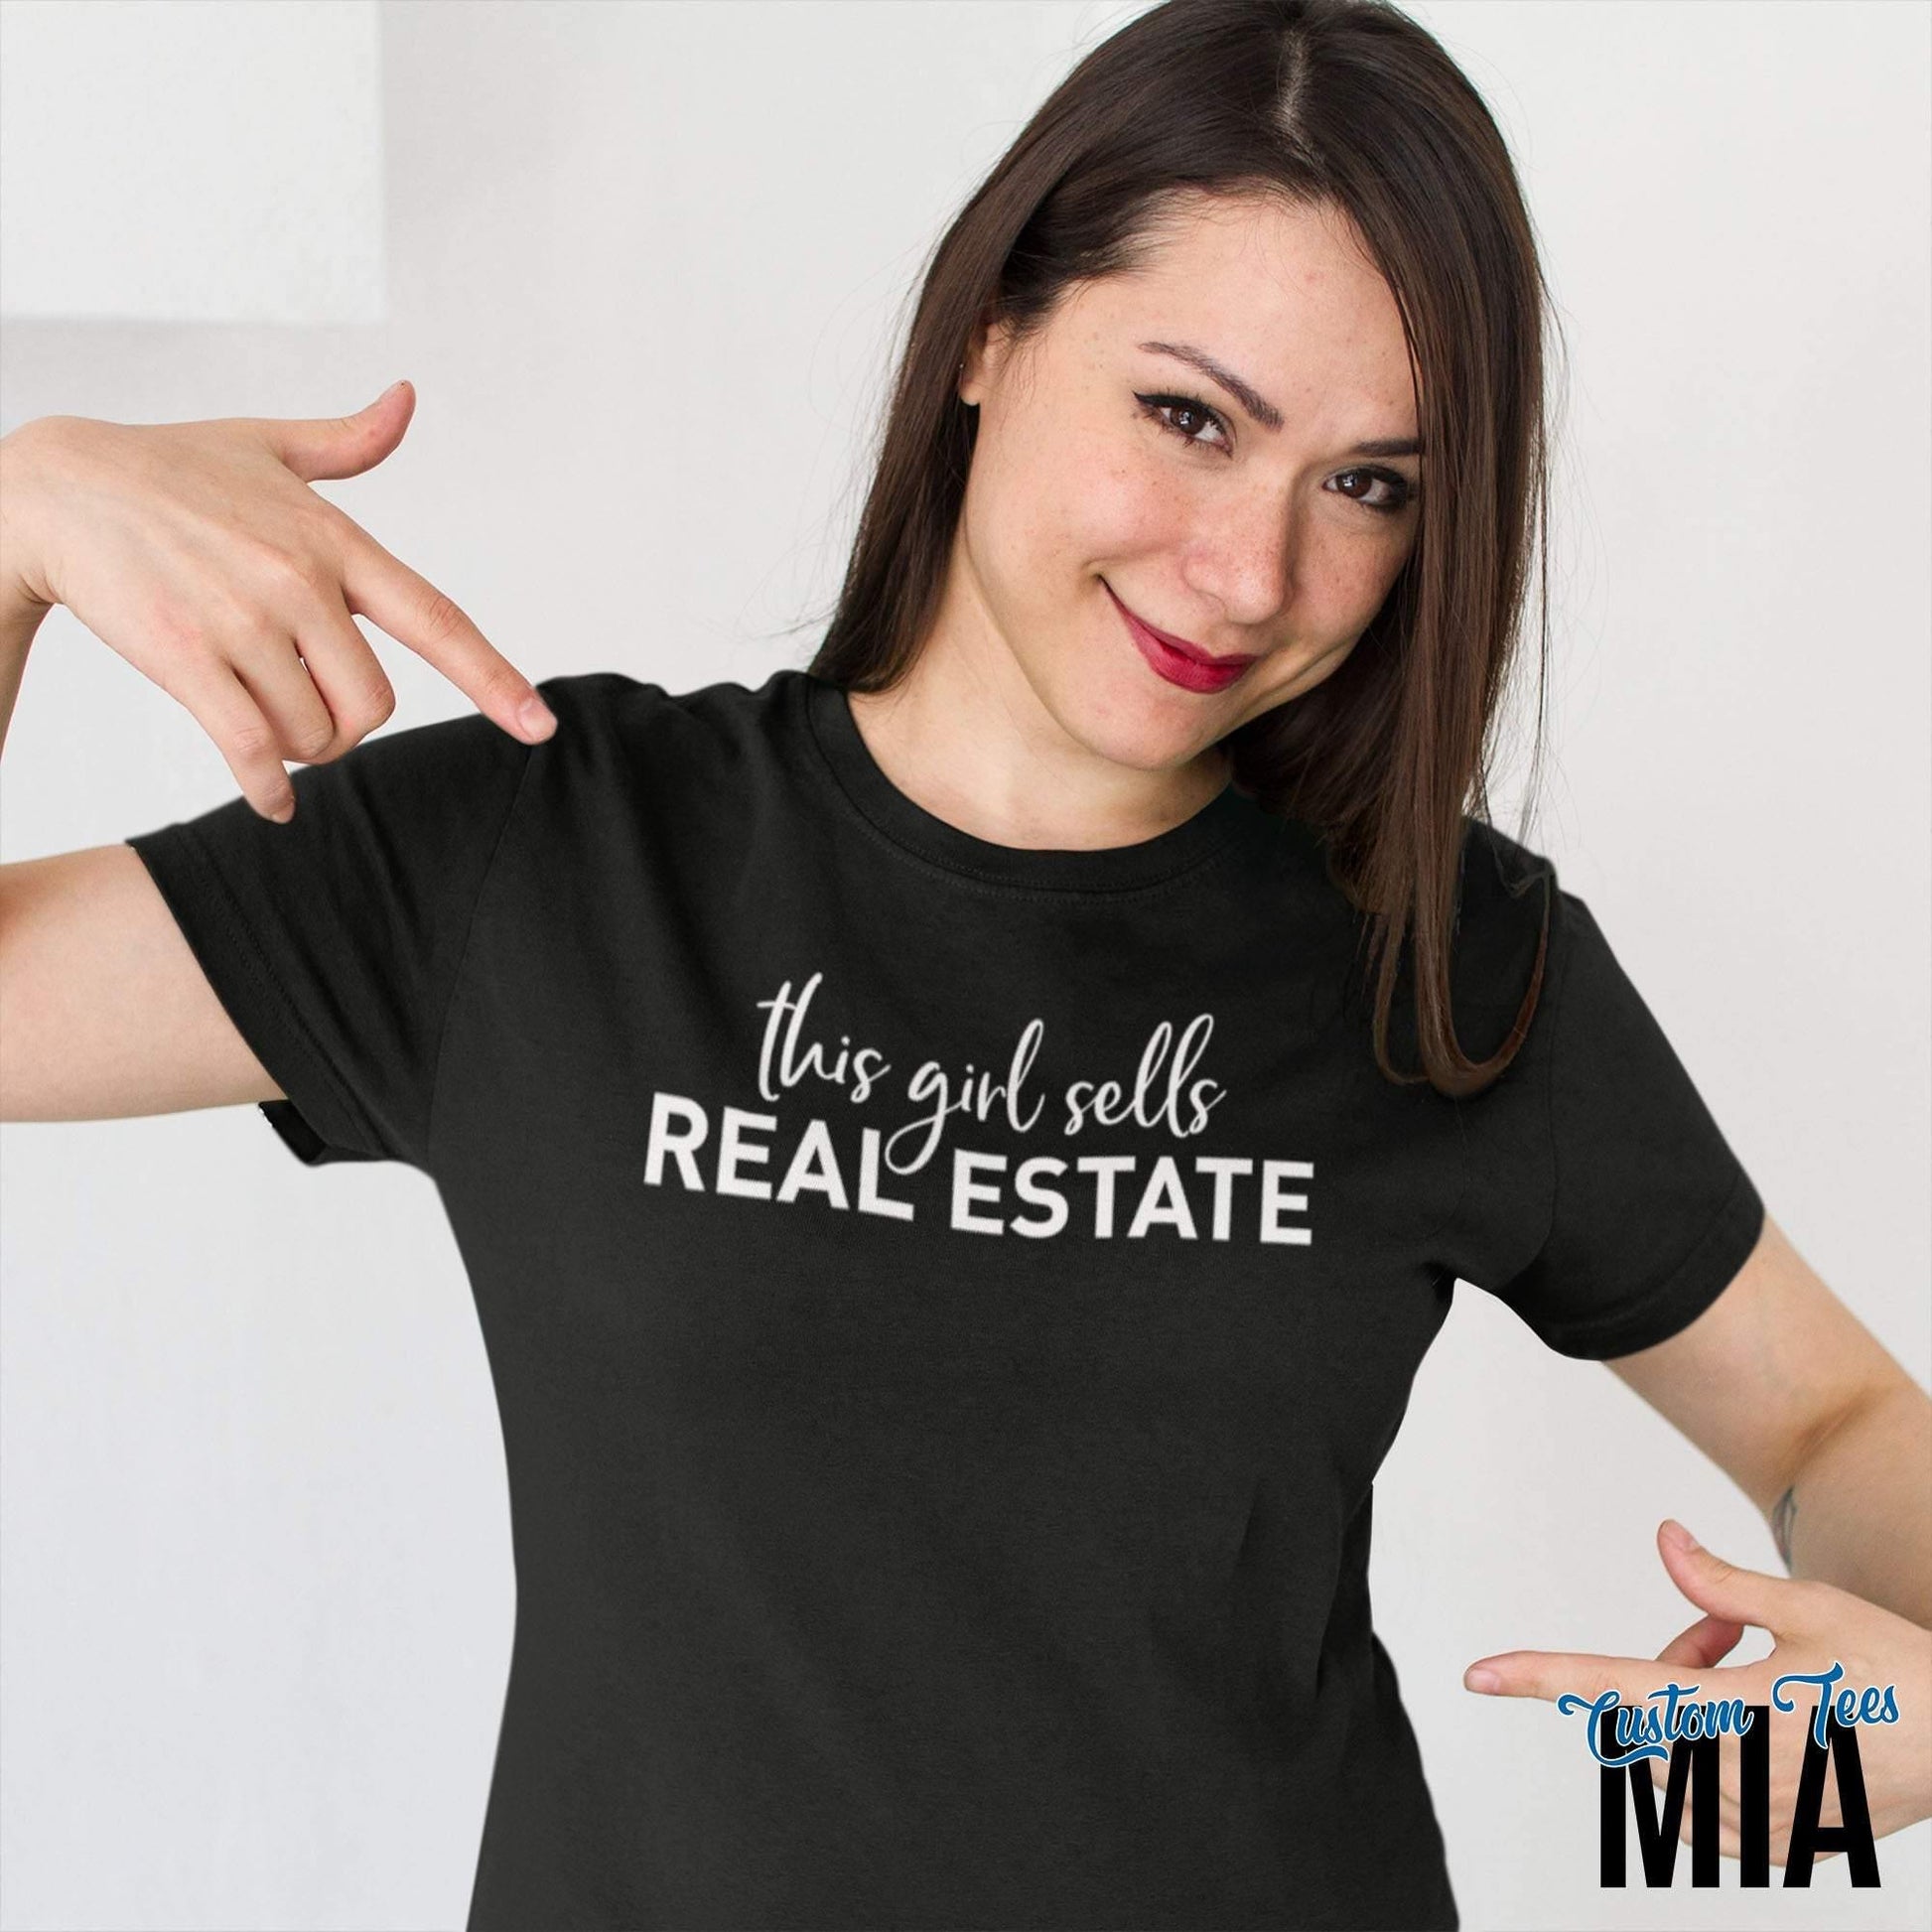 This Girl Sells Real Estate Shirt - Realtor Shirts - Tees MIA